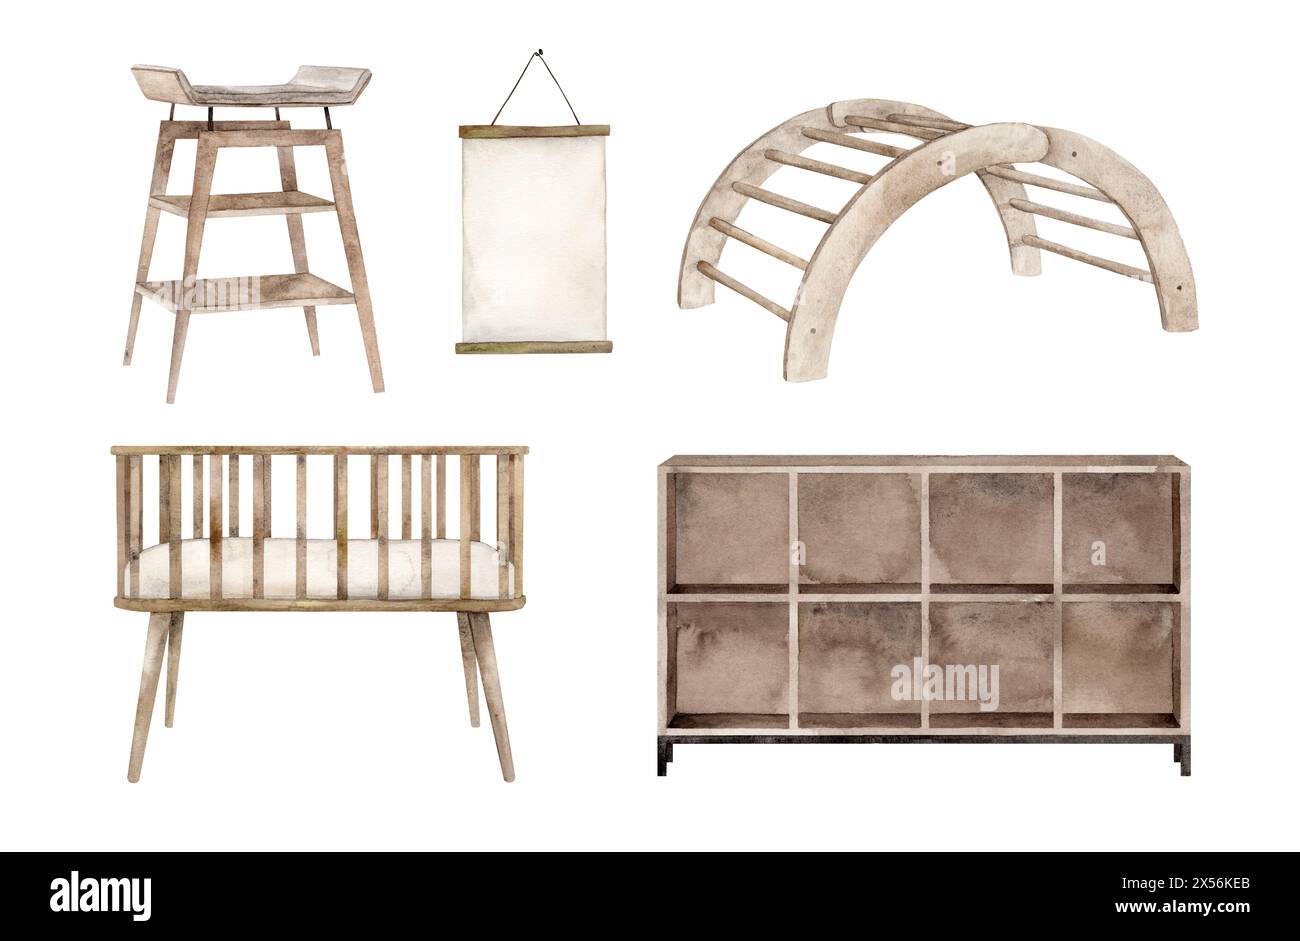 Un set di mobili per la stanza dei bambini, uno spogliatoio, una cassettiera con scaffali, una cornice per arrampicate. Illustrazione acquerello per bambini Foto Stock